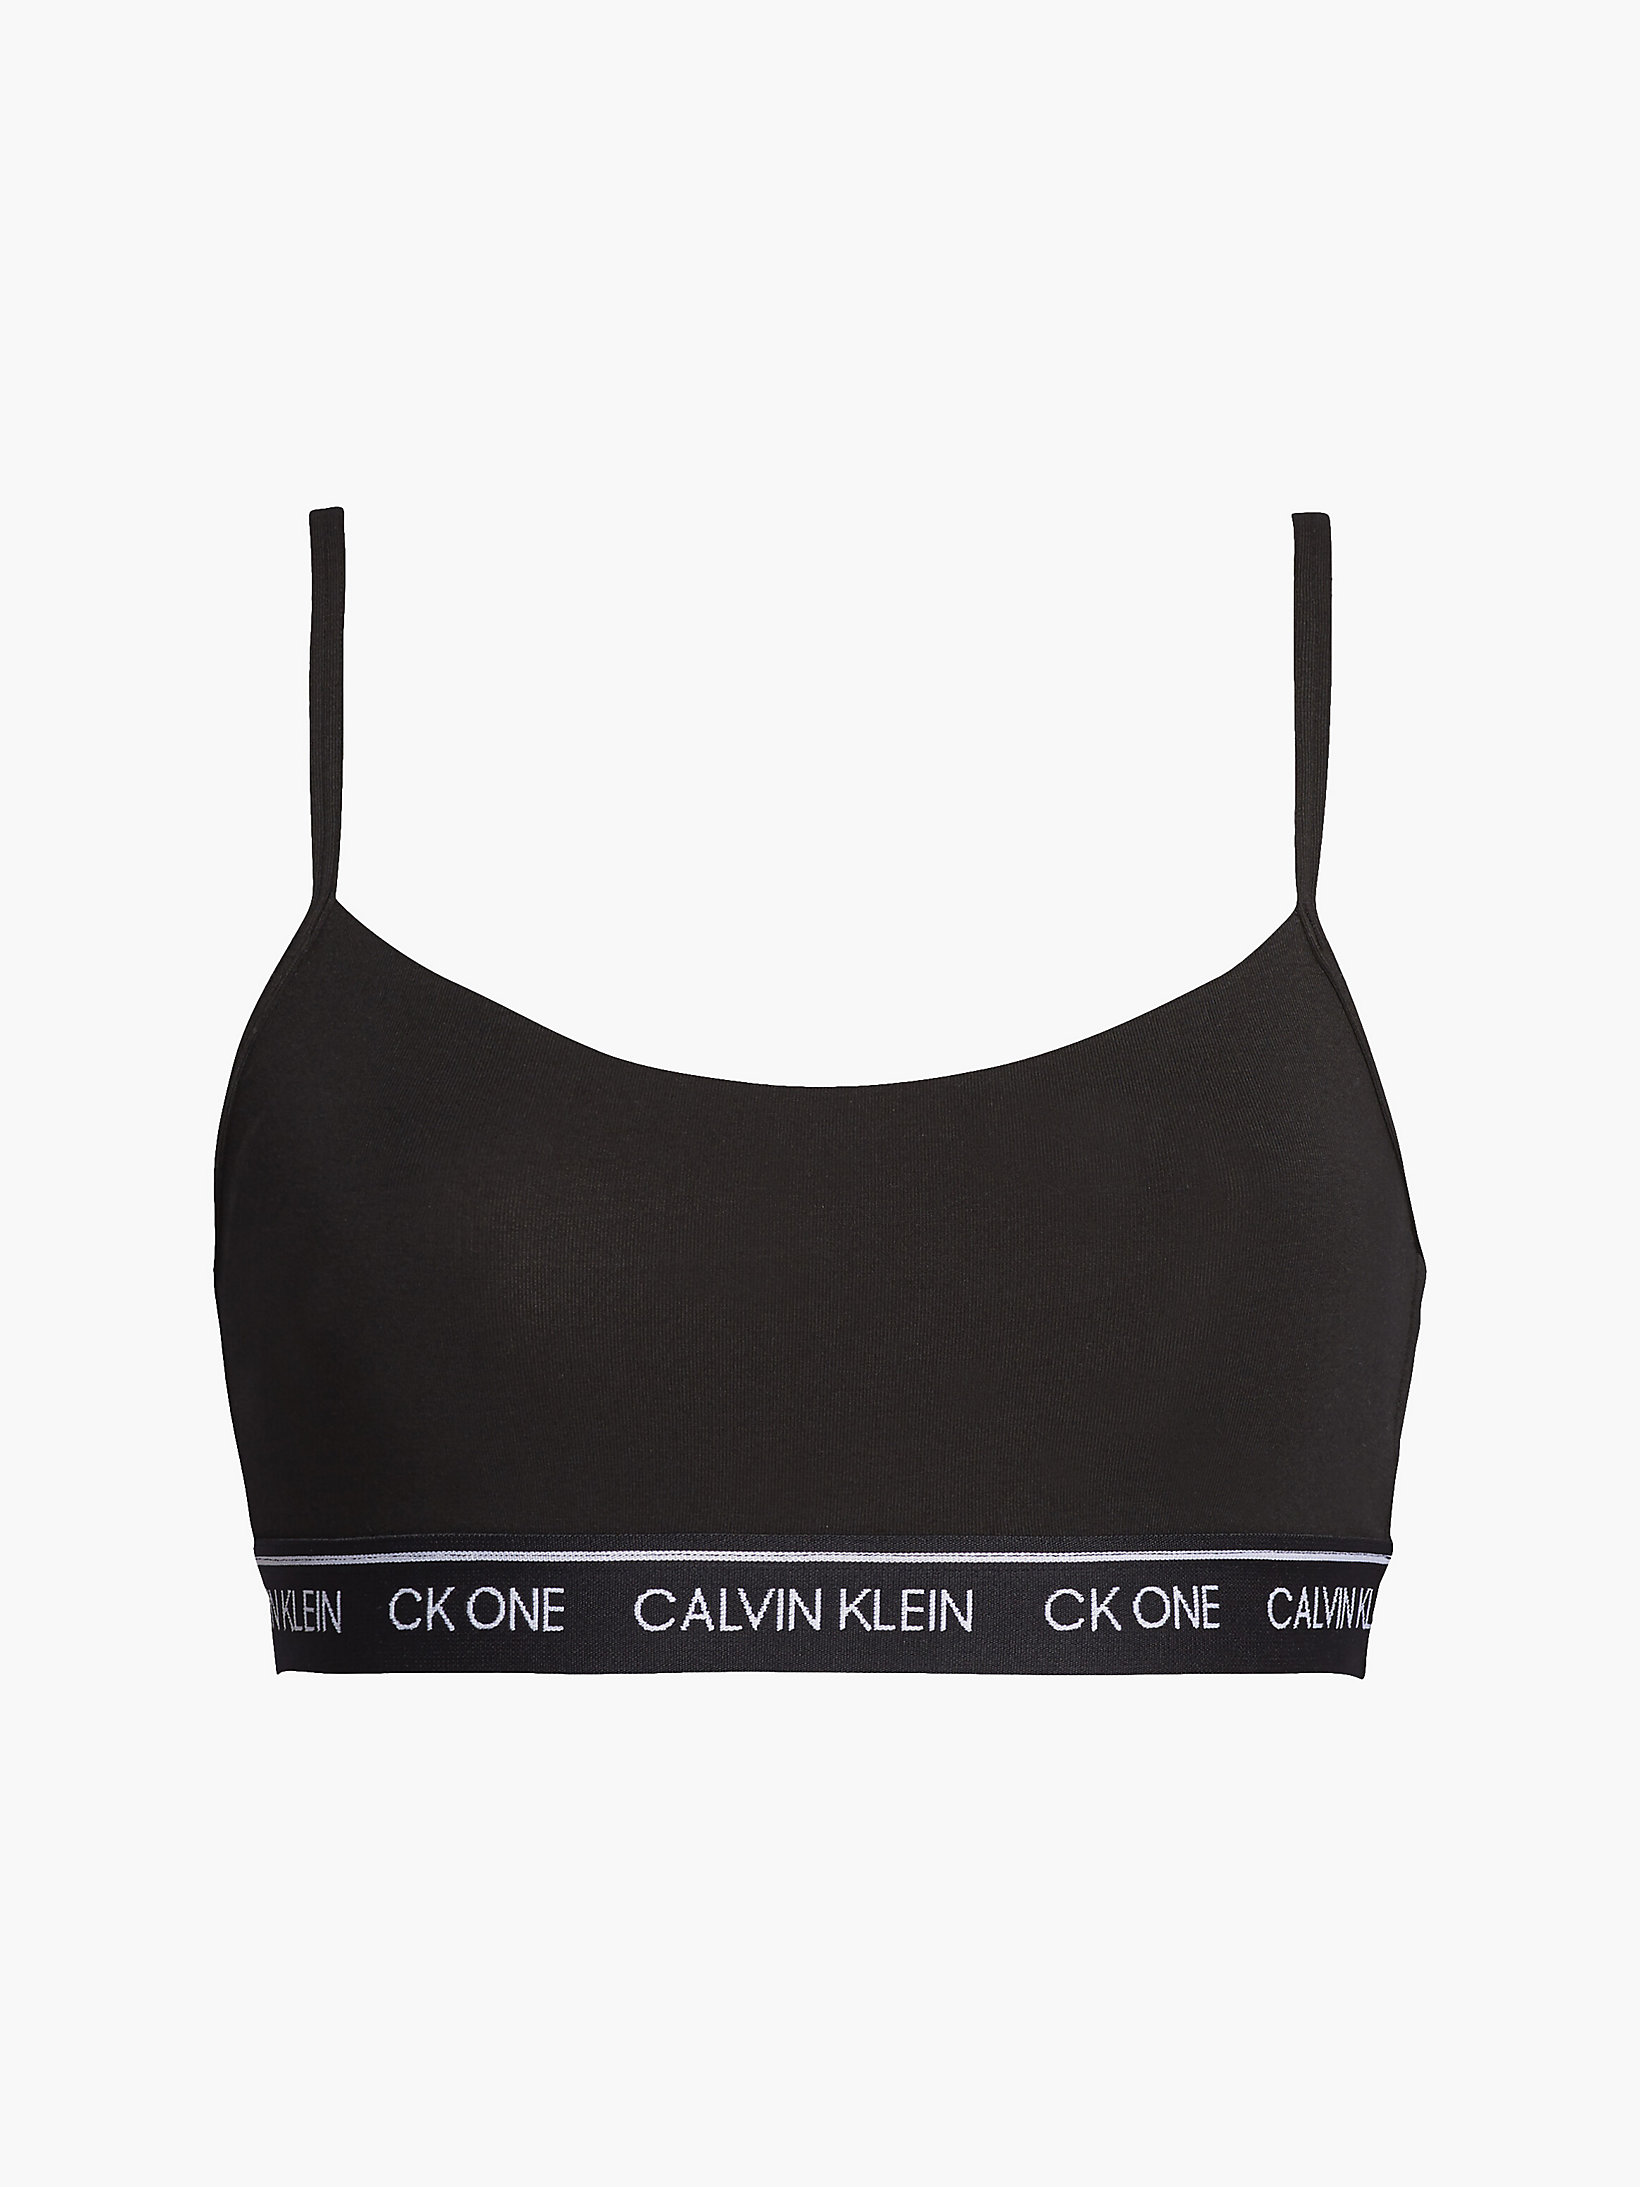 Brassière - CK One > Black > undefined femmes > Calvin Klein